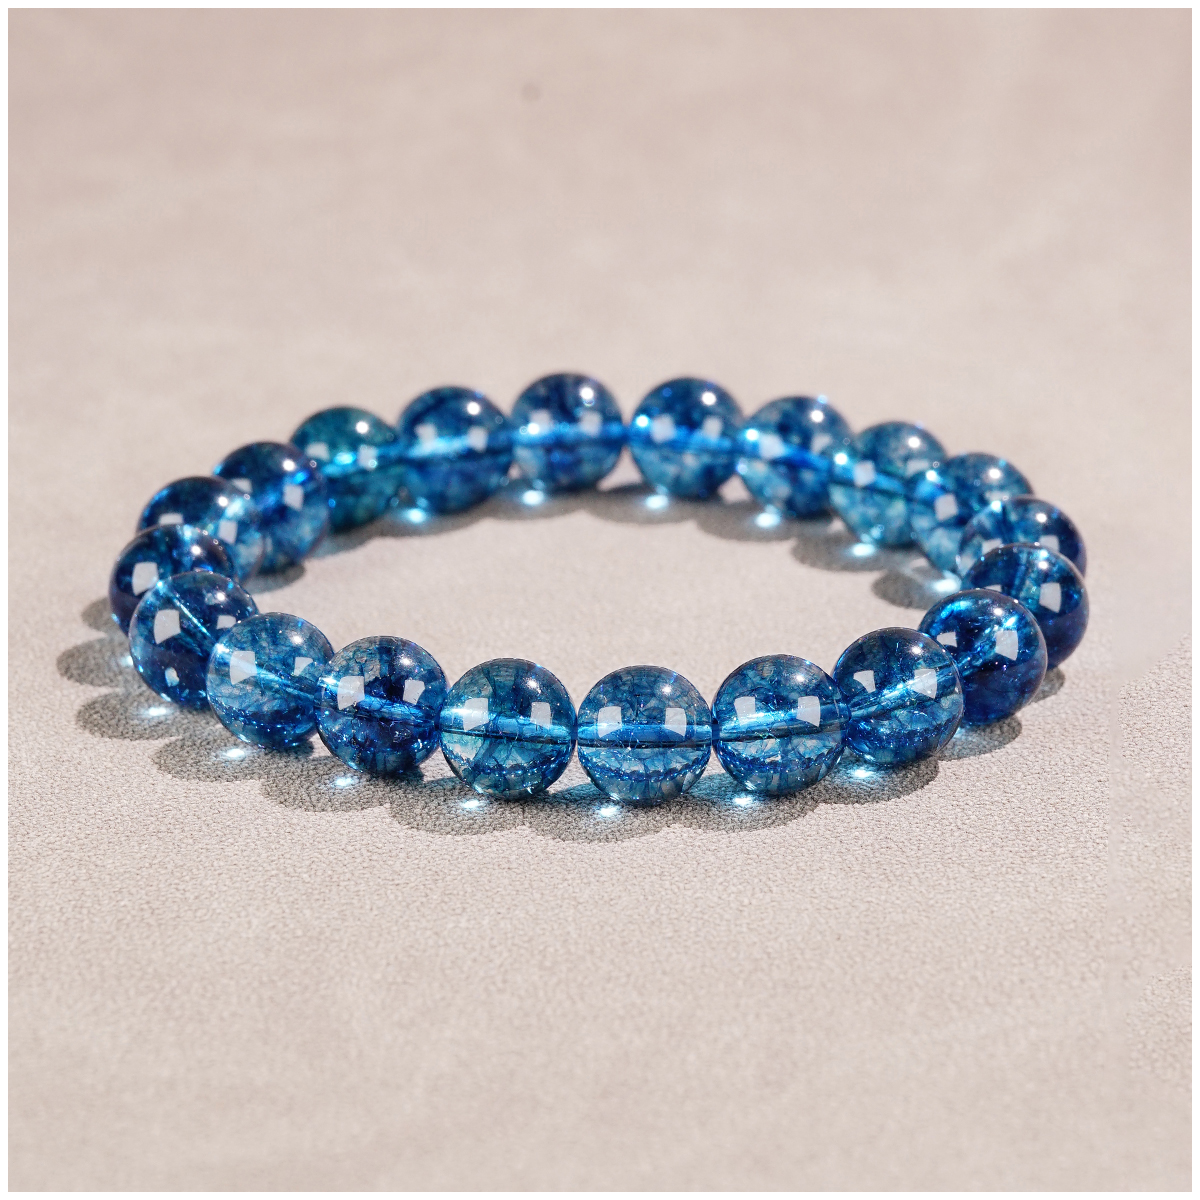 Sapphire kwarc jadei elastyczne bransoletki z koralikami Unisex kamień szlachetny bransoletki modne bransoletki